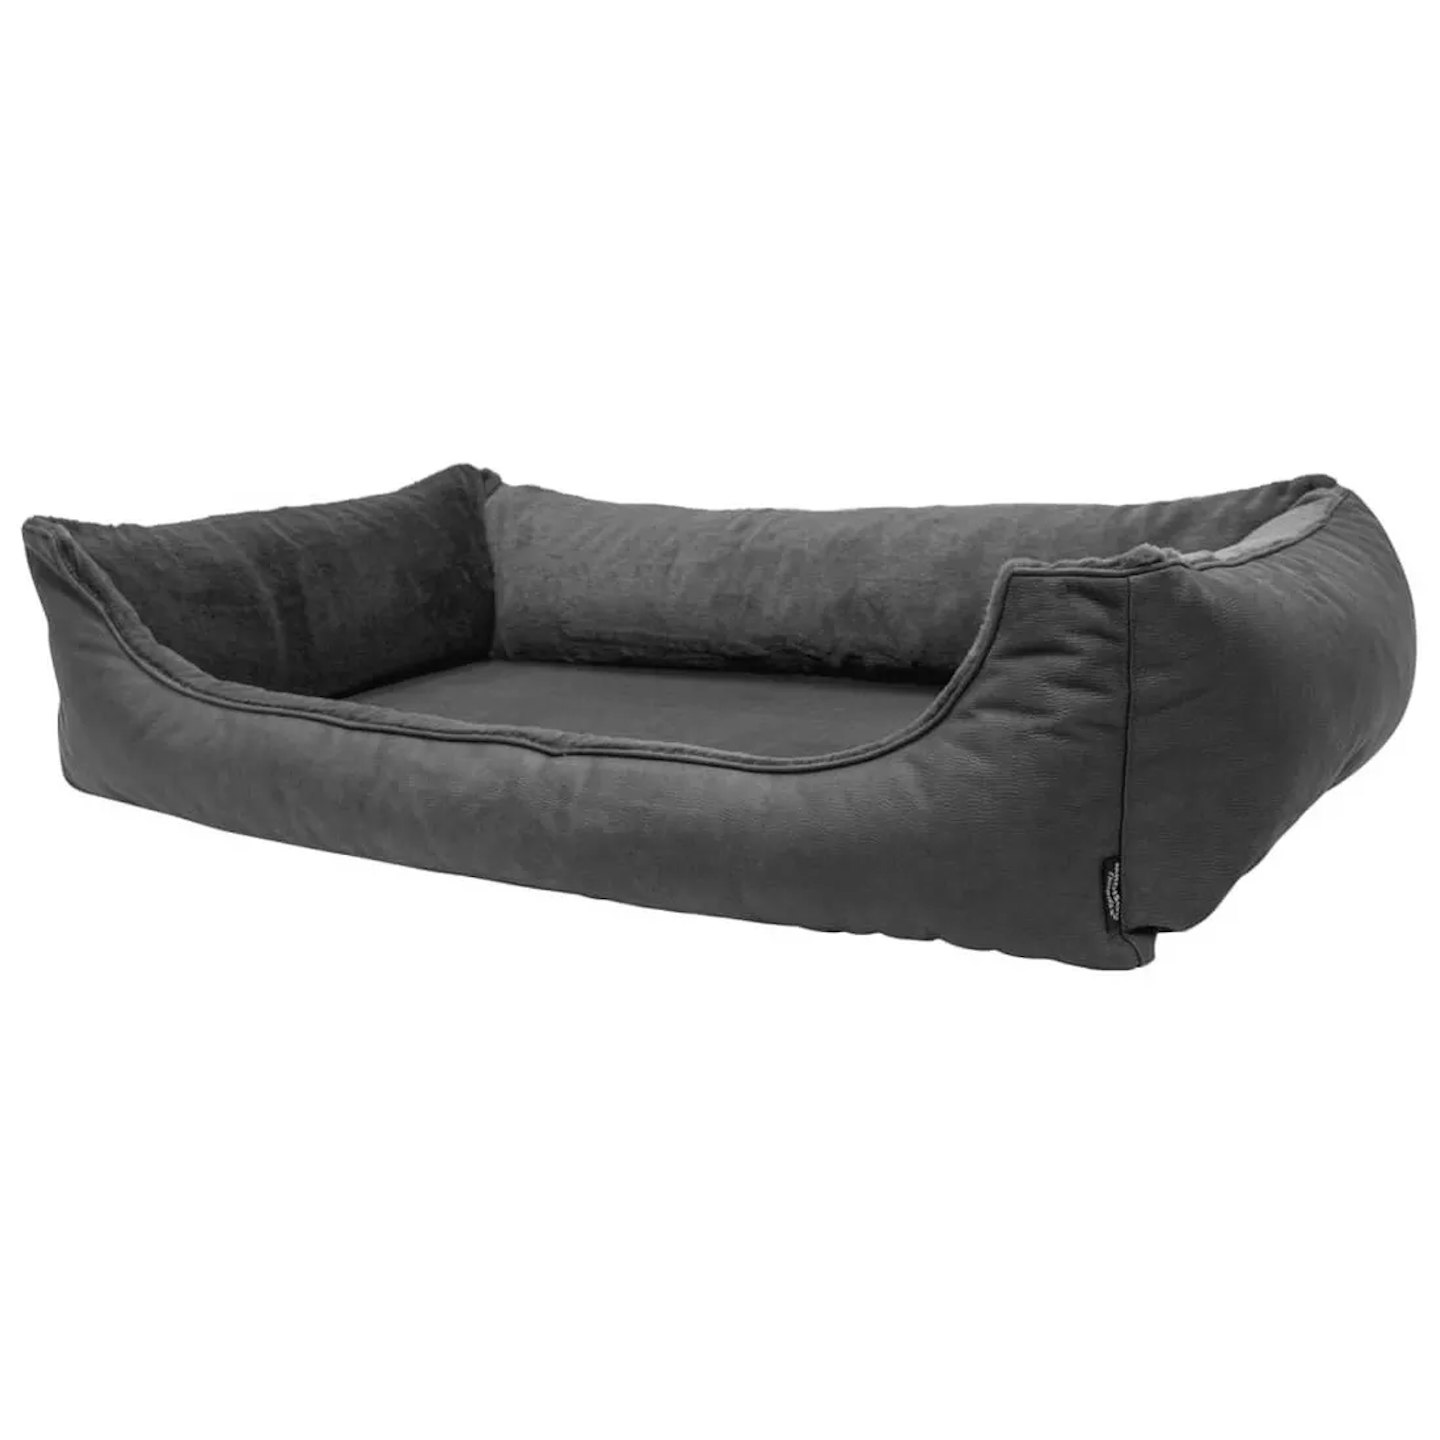 Best orthopaedic sofa style dog bed 